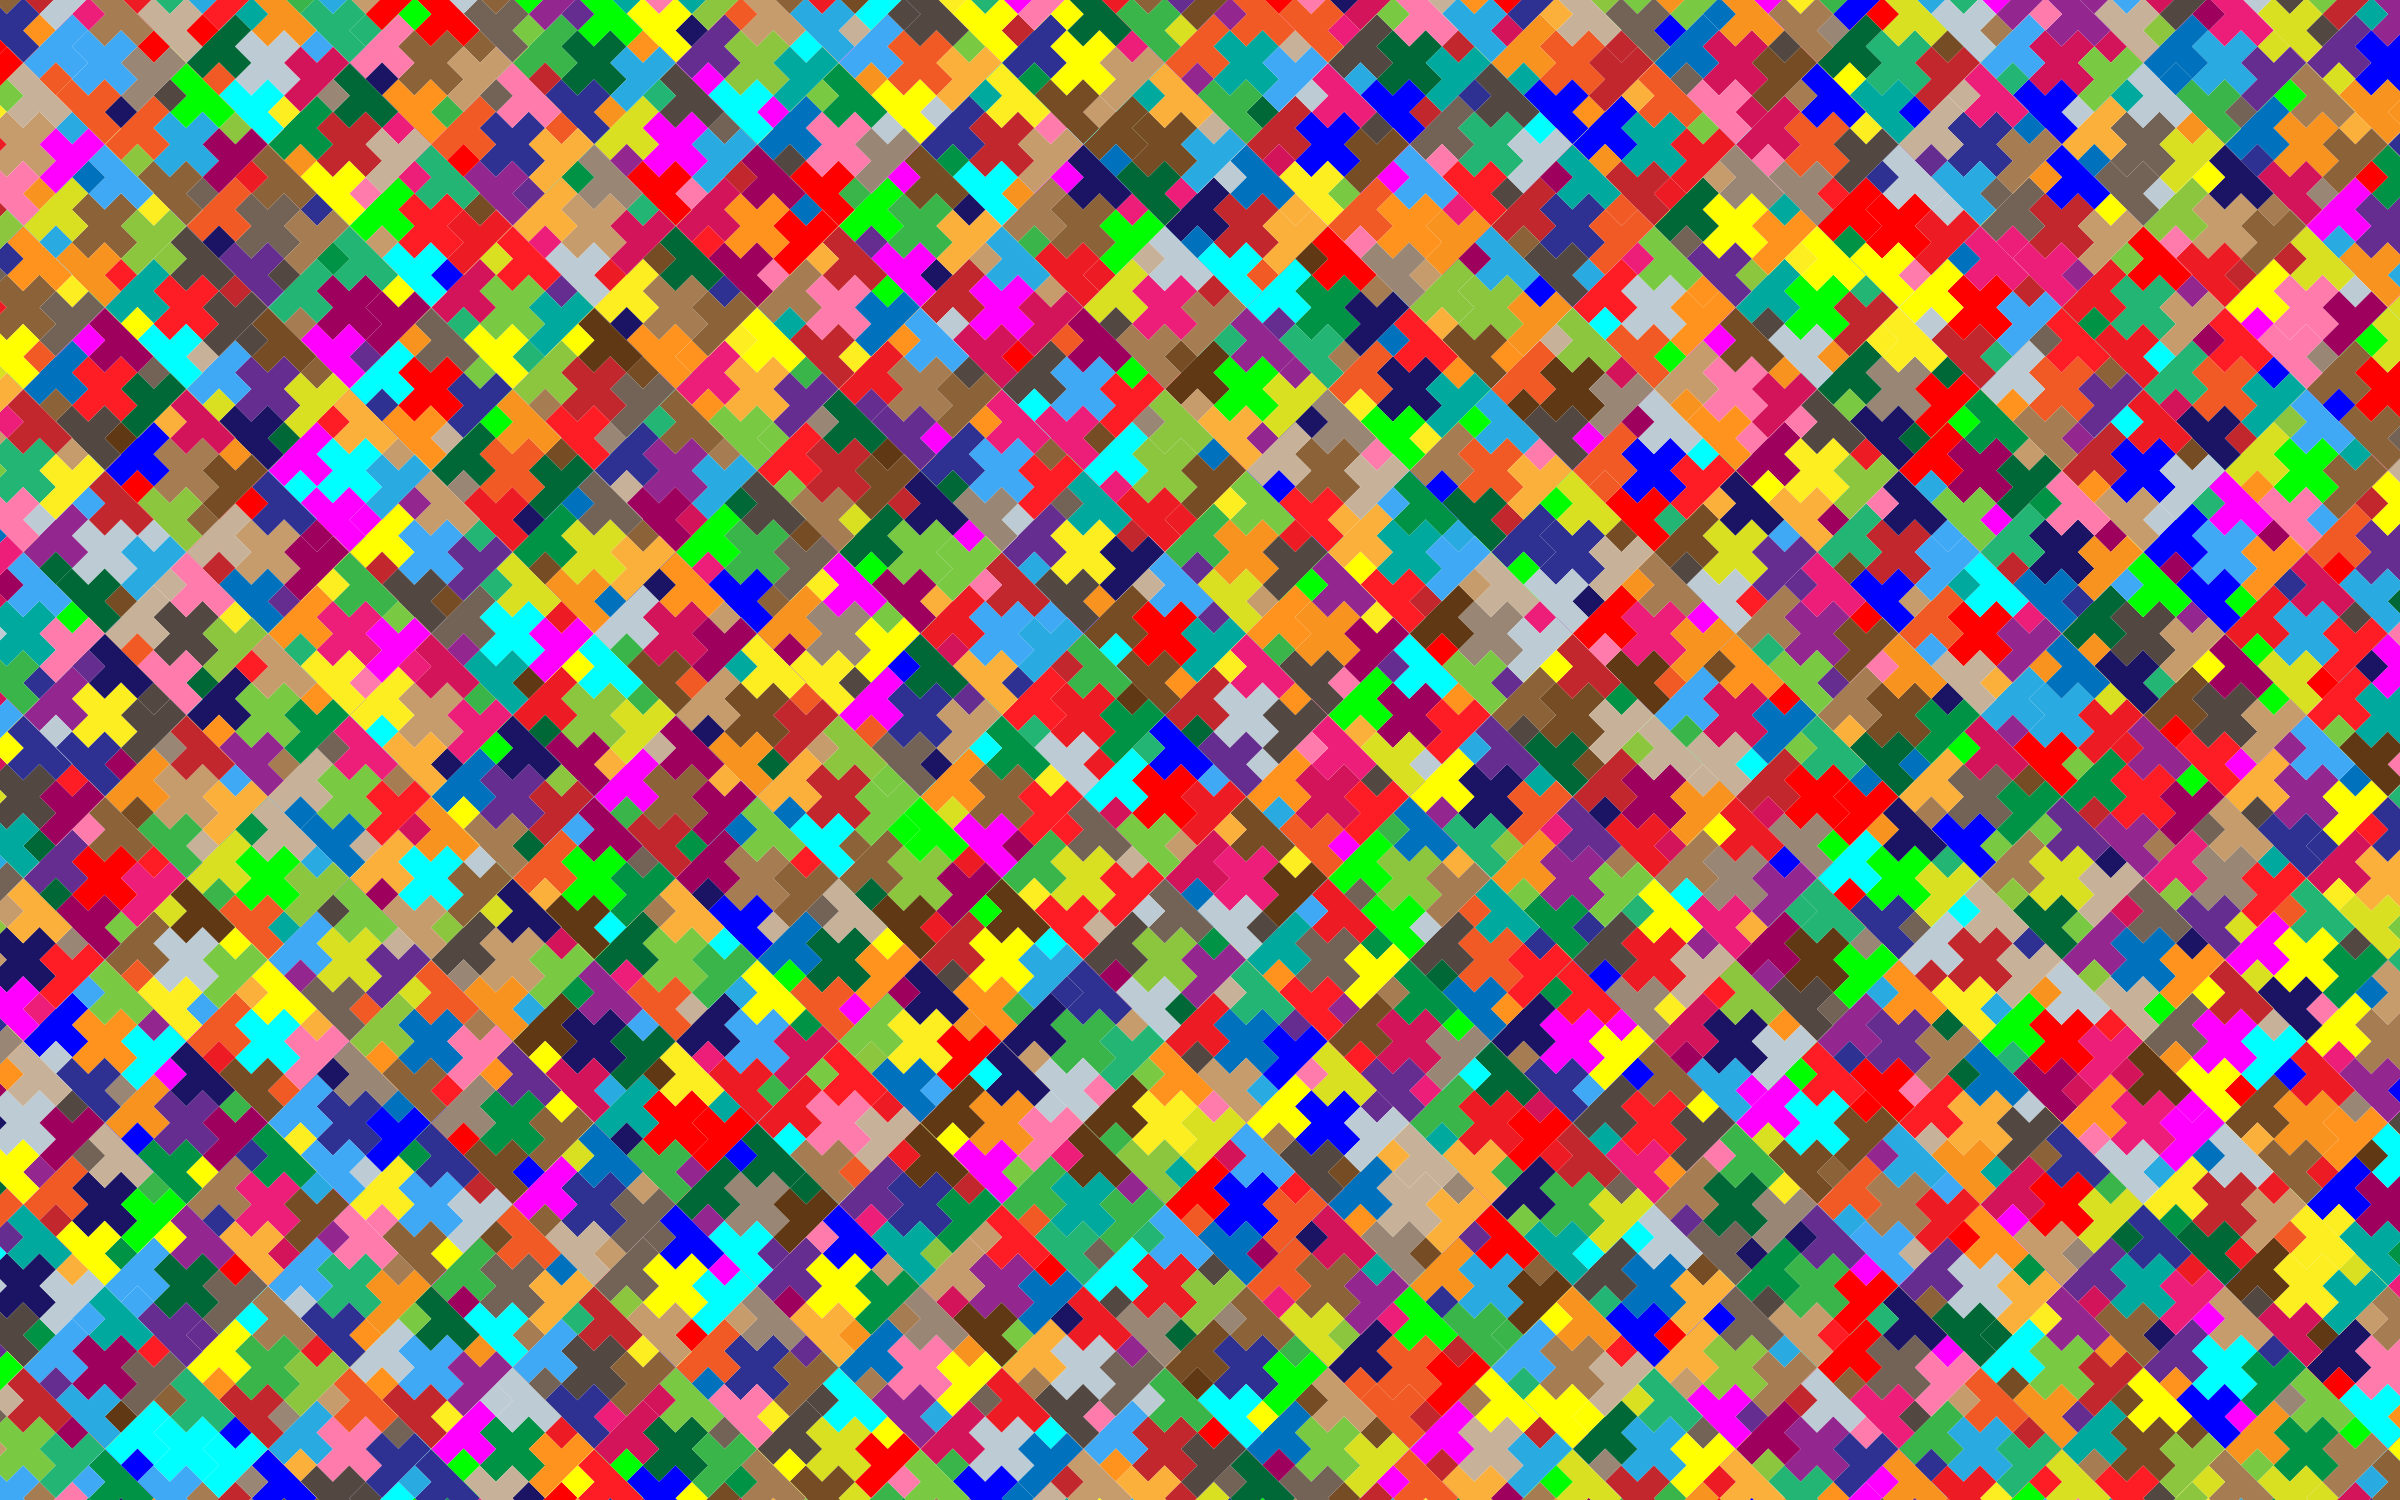 Free Colorful Wallpaper Desktop | PixelsTalk.Net